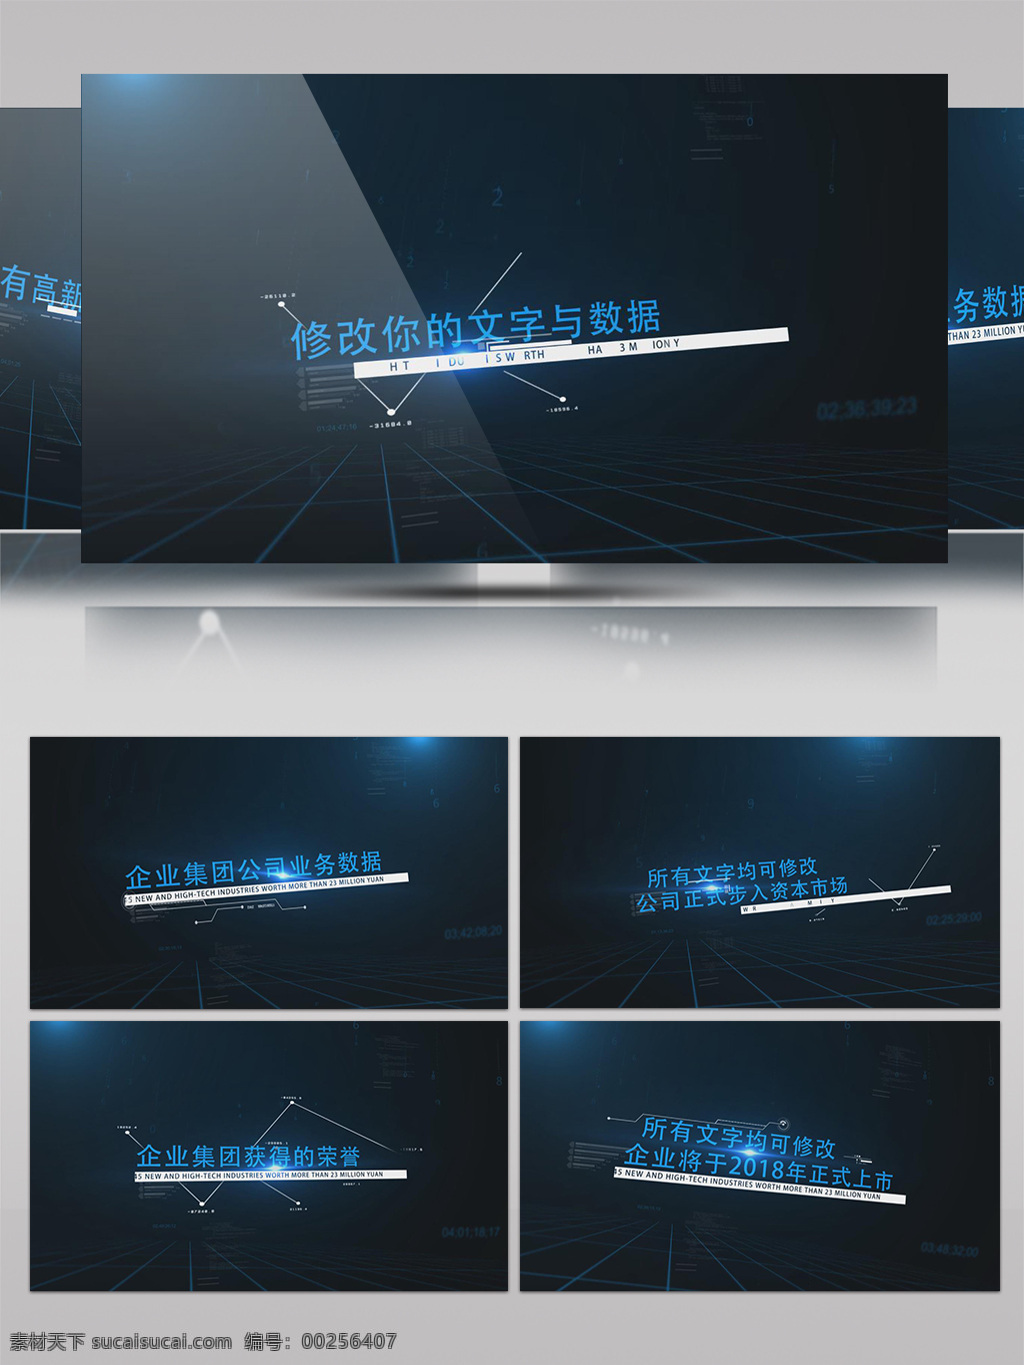 高科技 感 企业集团 数据 字幕 展示 ae 模板 科技 大数据 光束 酷炫 宣传 区域链 穿透 蓝黑 素材模板 片头片尾